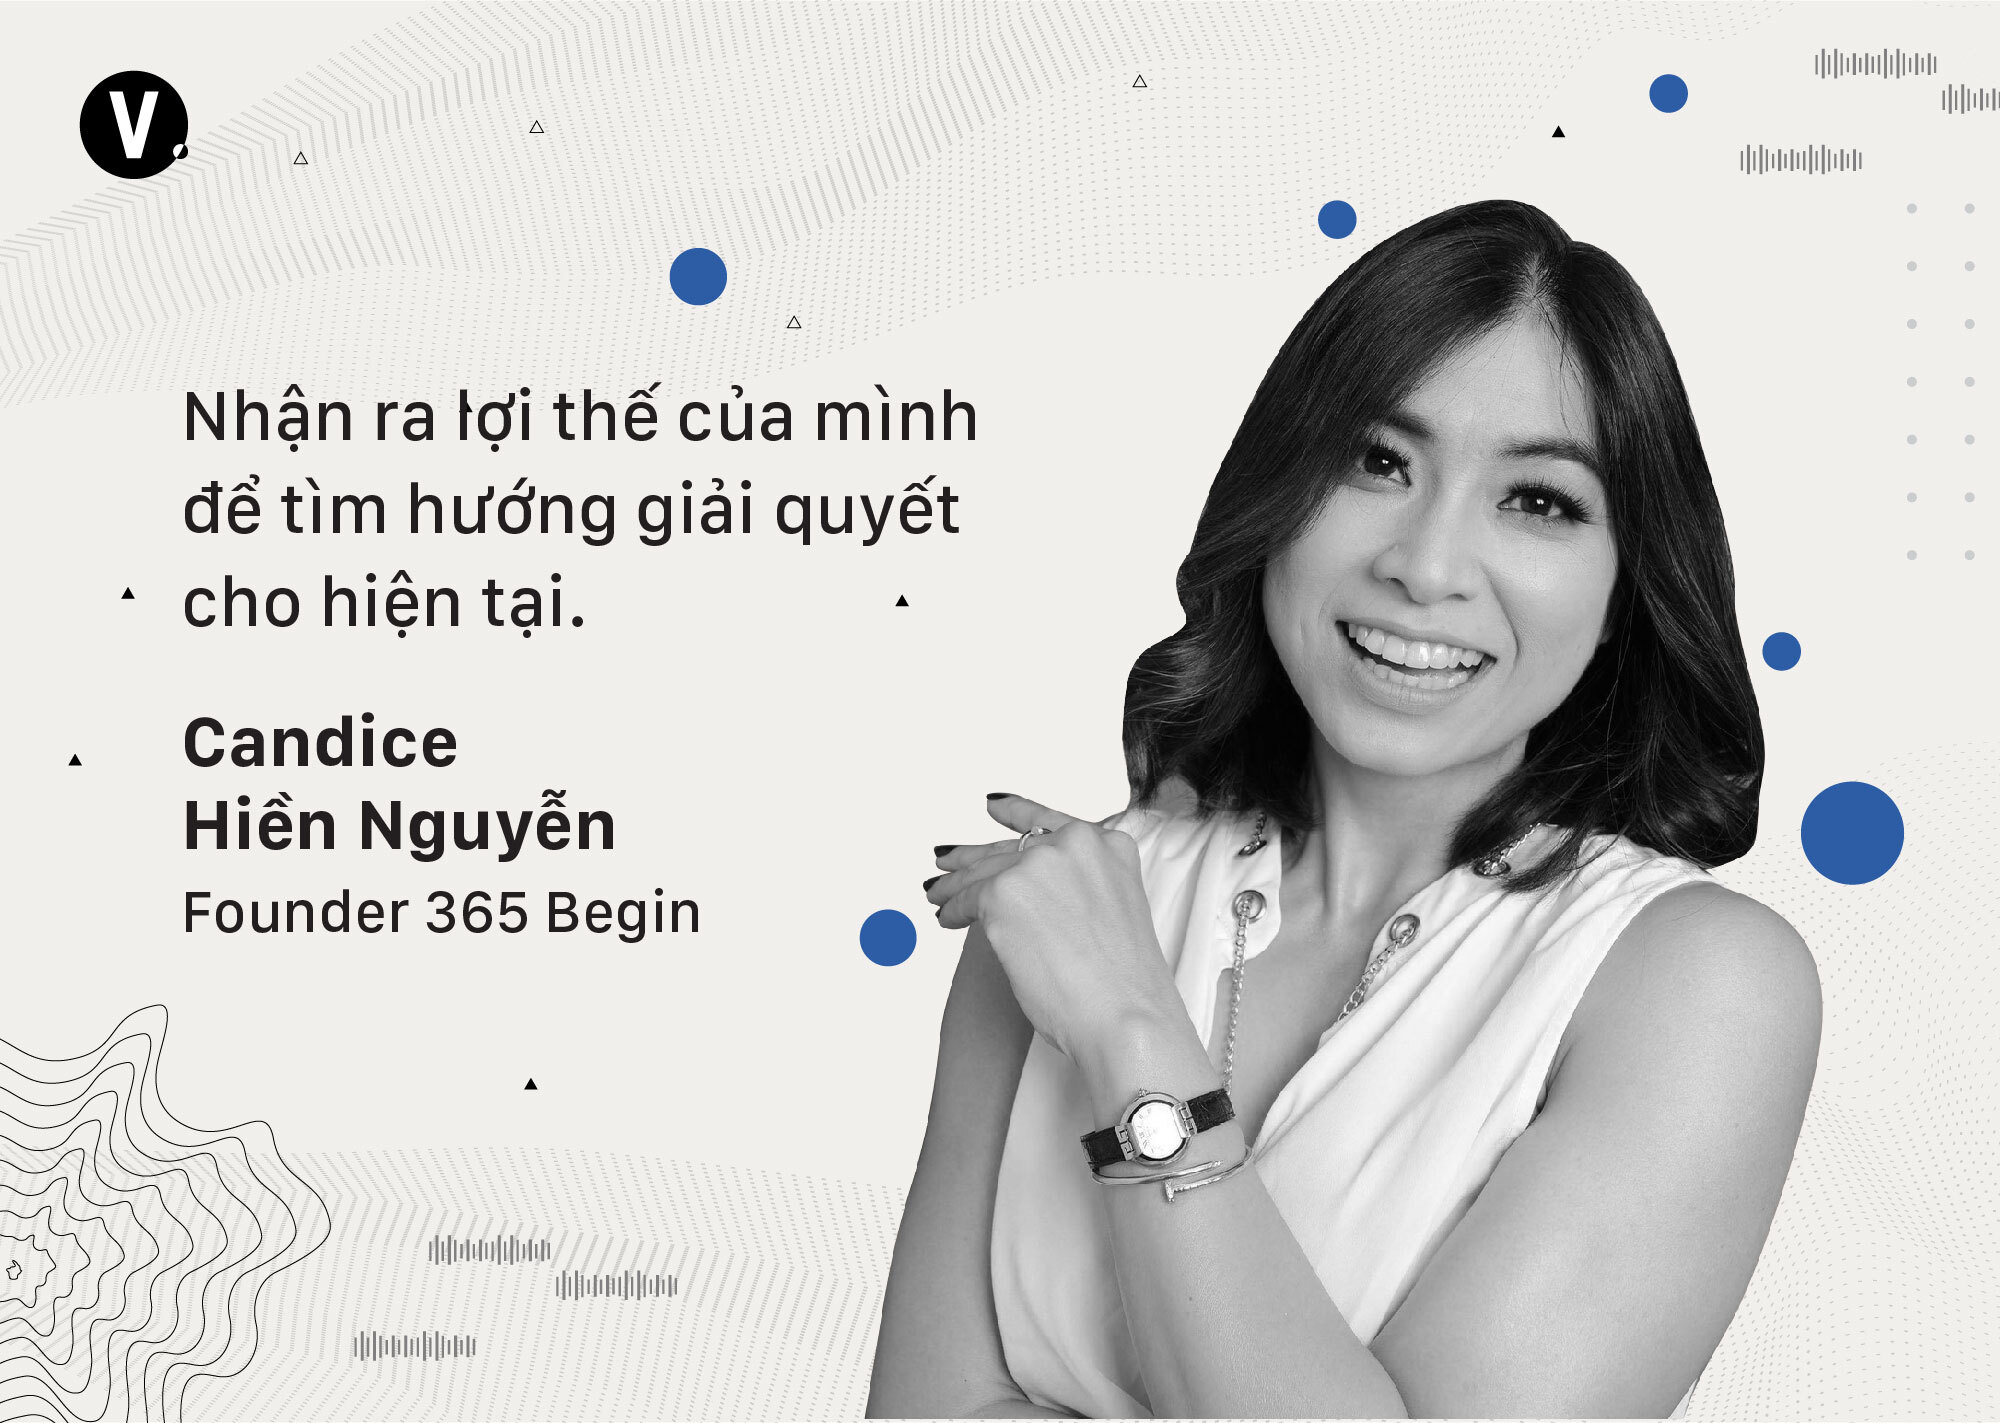 Cách mà các startup Việt đang biến thách thức từ COVID-19 thành cơ hội | Kinhdoanh247.vn